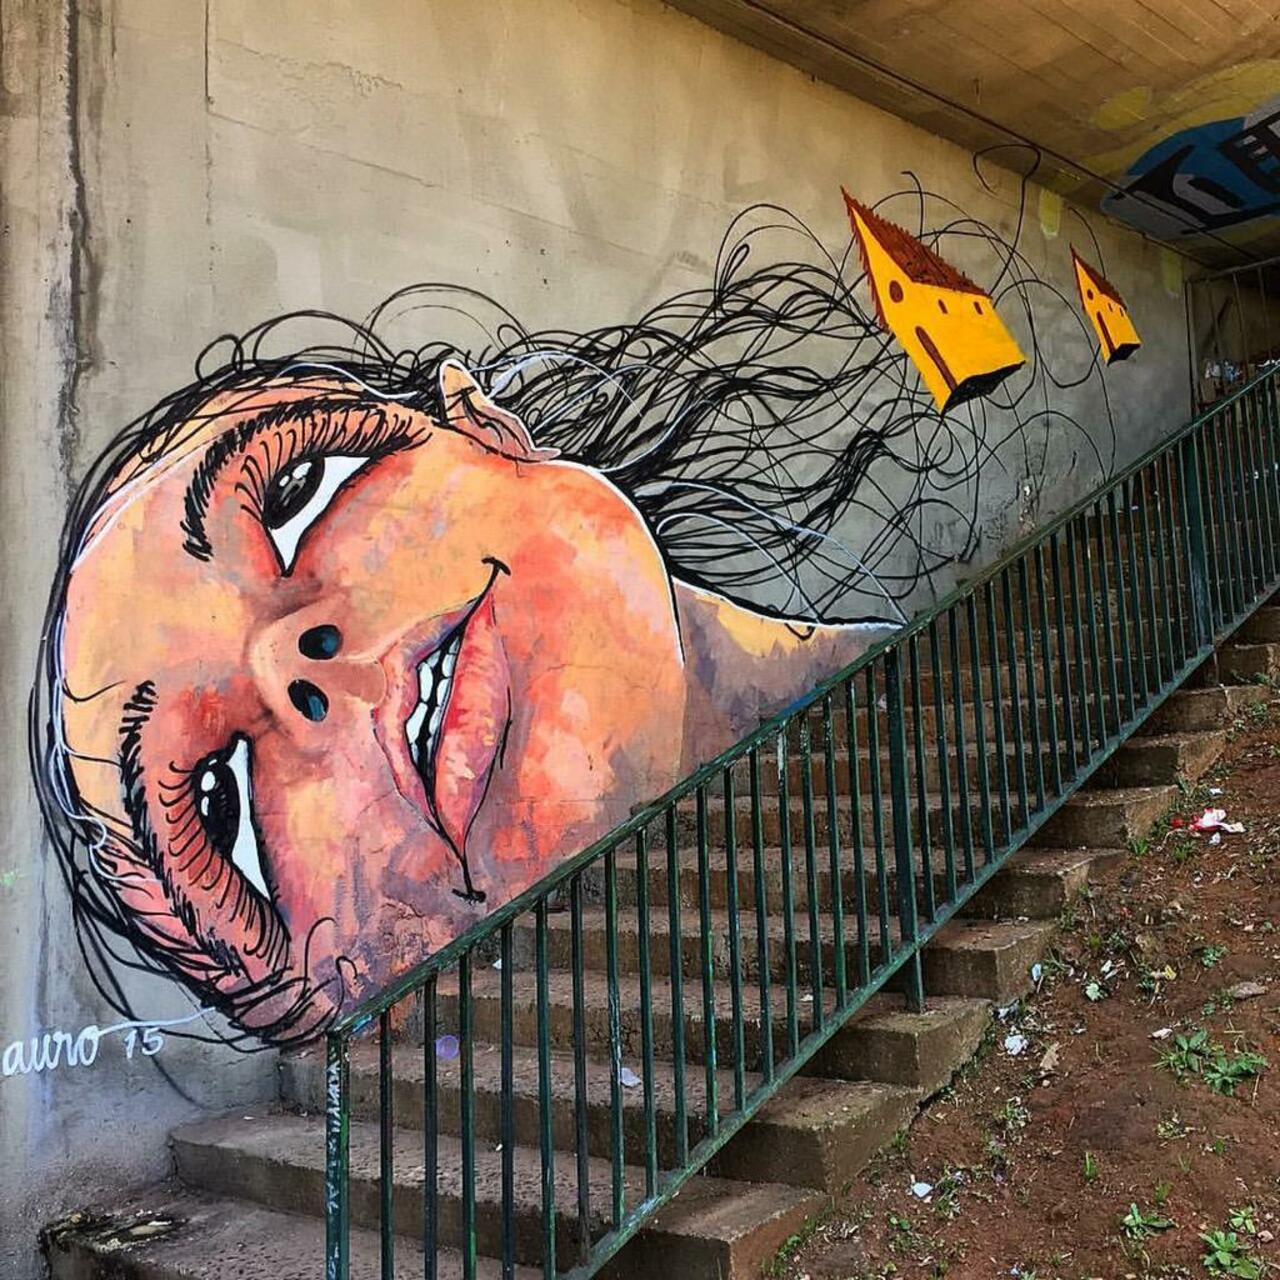 Street Art by Reveracidade in São Paulo 

#art #graffiti #mural #streetart http://t.co/eoVzvXF6vK